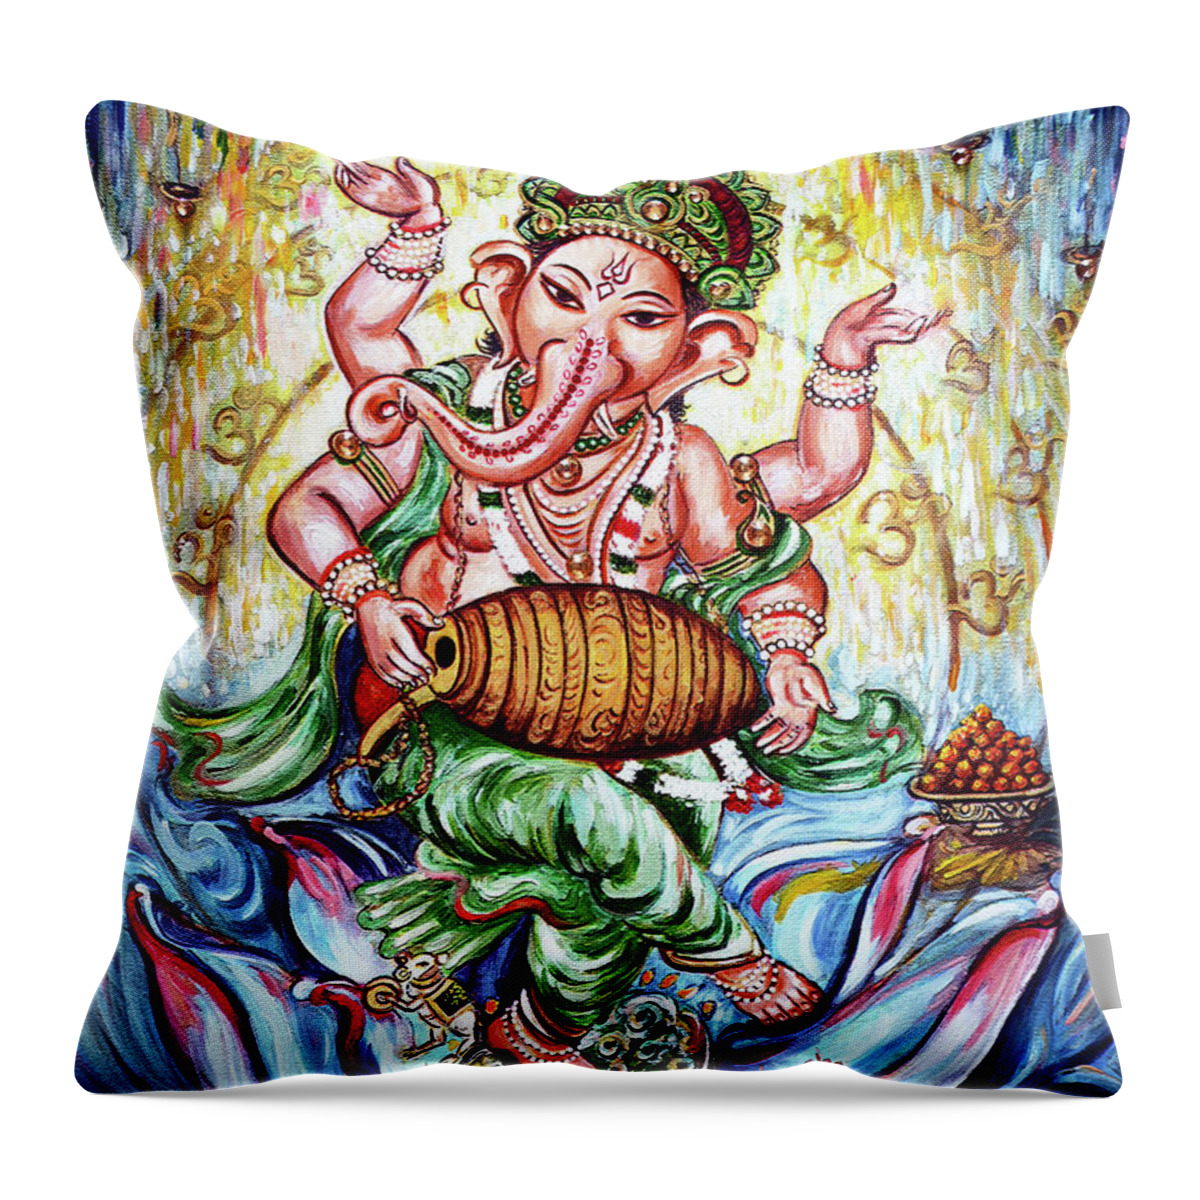 Ganesha Throw Pillow featuring the painting Ganesha Dancing and Playing Mridang by Harsh Malik